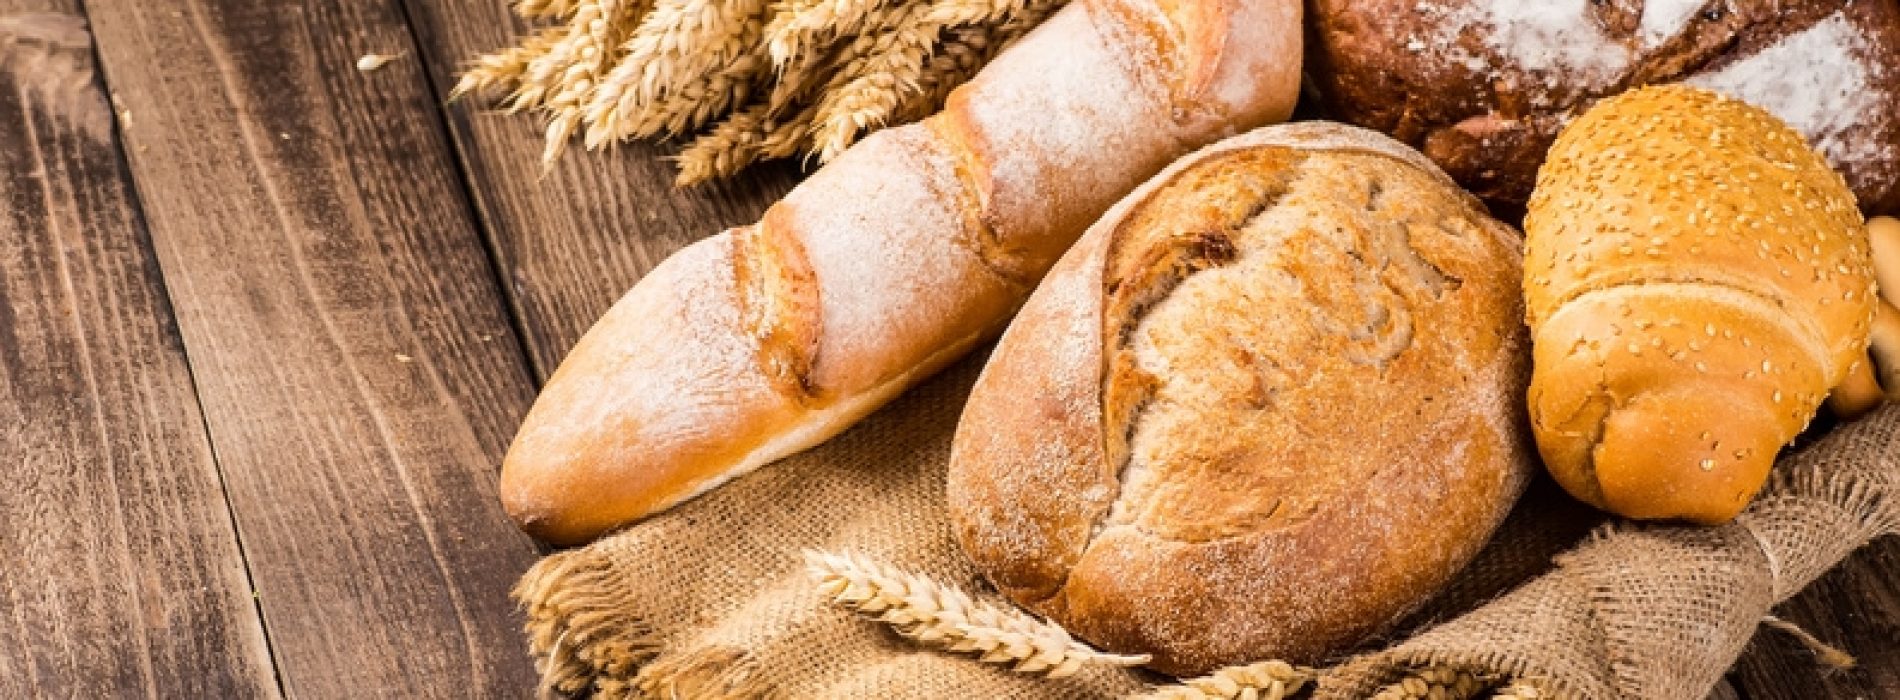 Maakt brood je dom? Gluten blijken de bloedstroom naar de hersenen te beperken, zo blijkt uit nieuw onderzoek